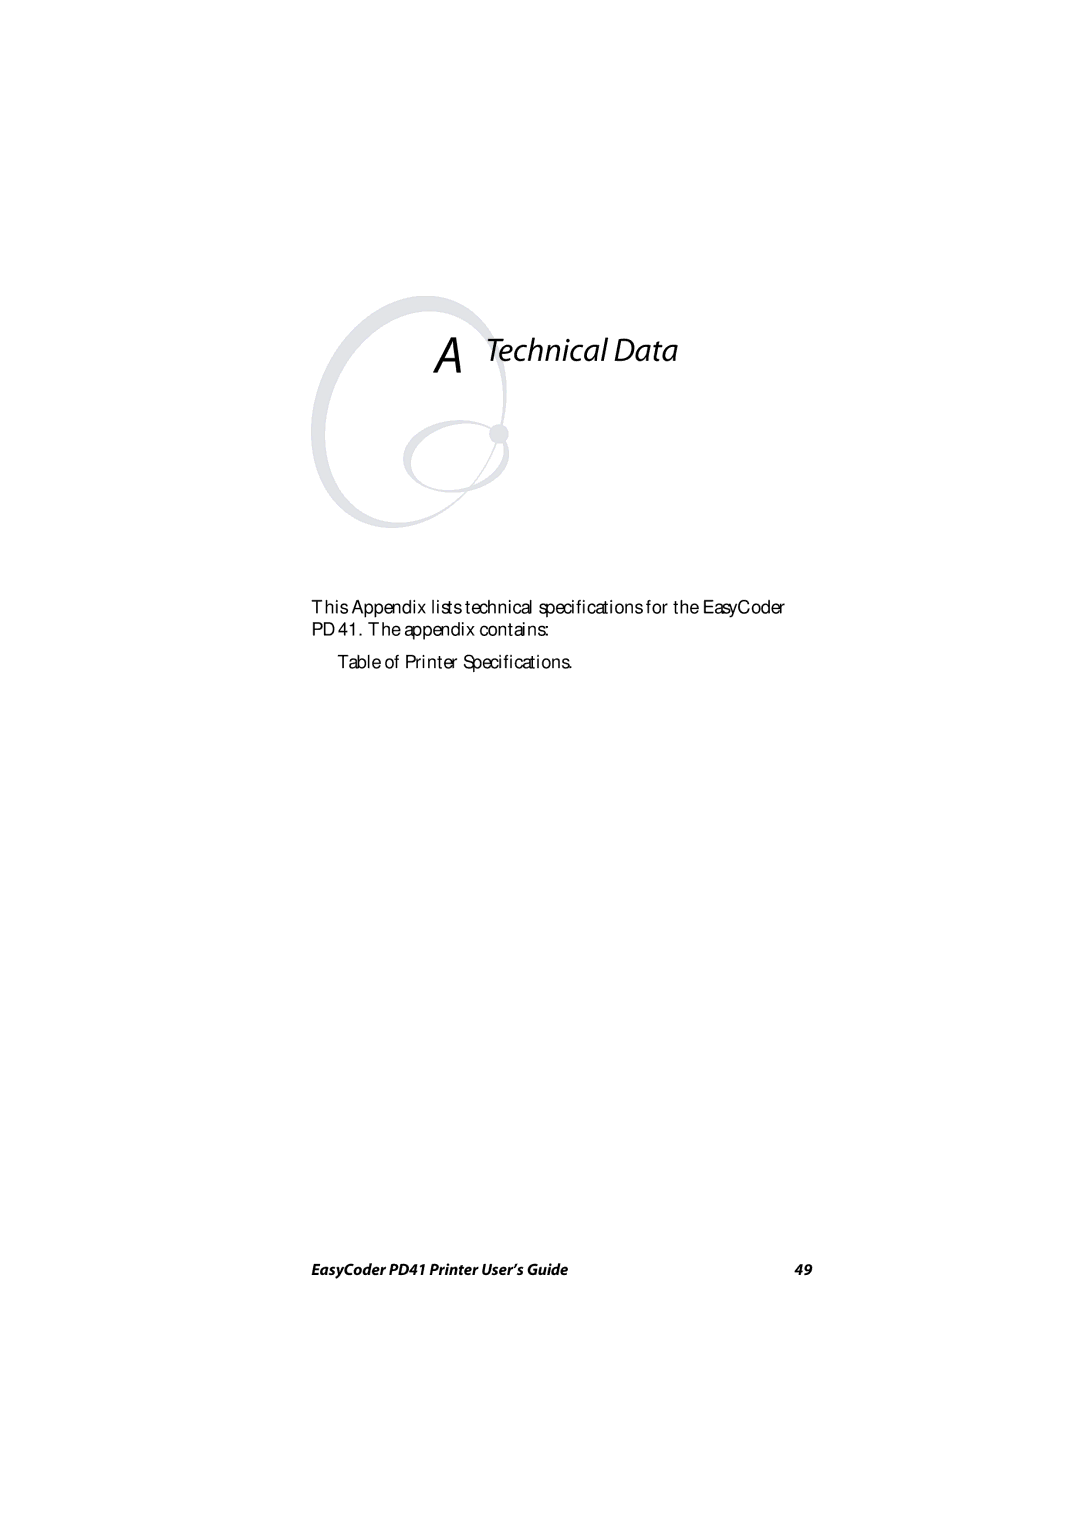 Intermec PD41 manual Technical Data 